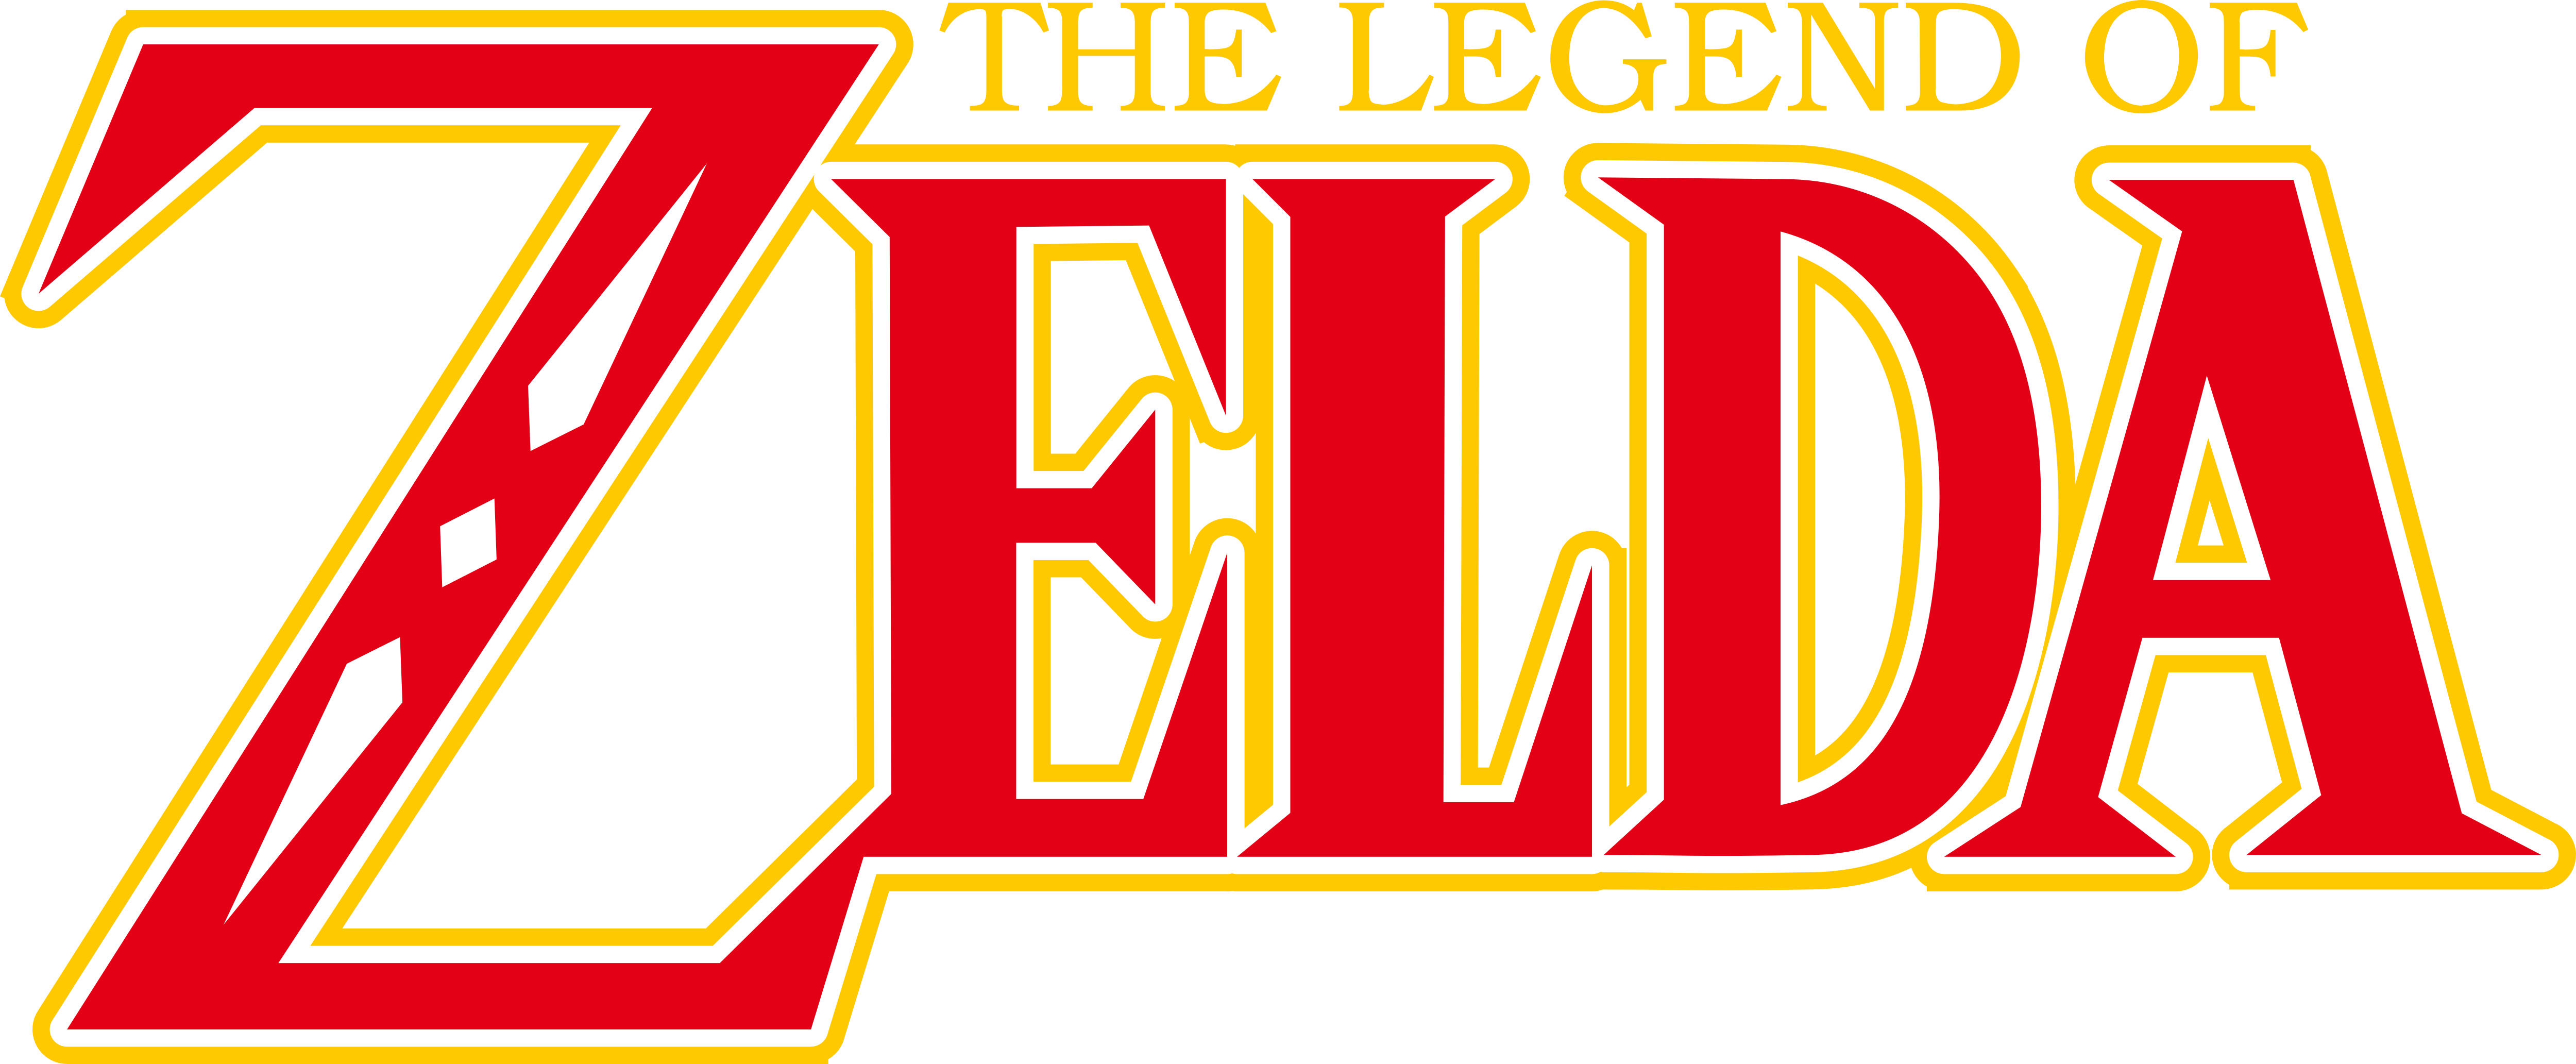 free legend of zelda font